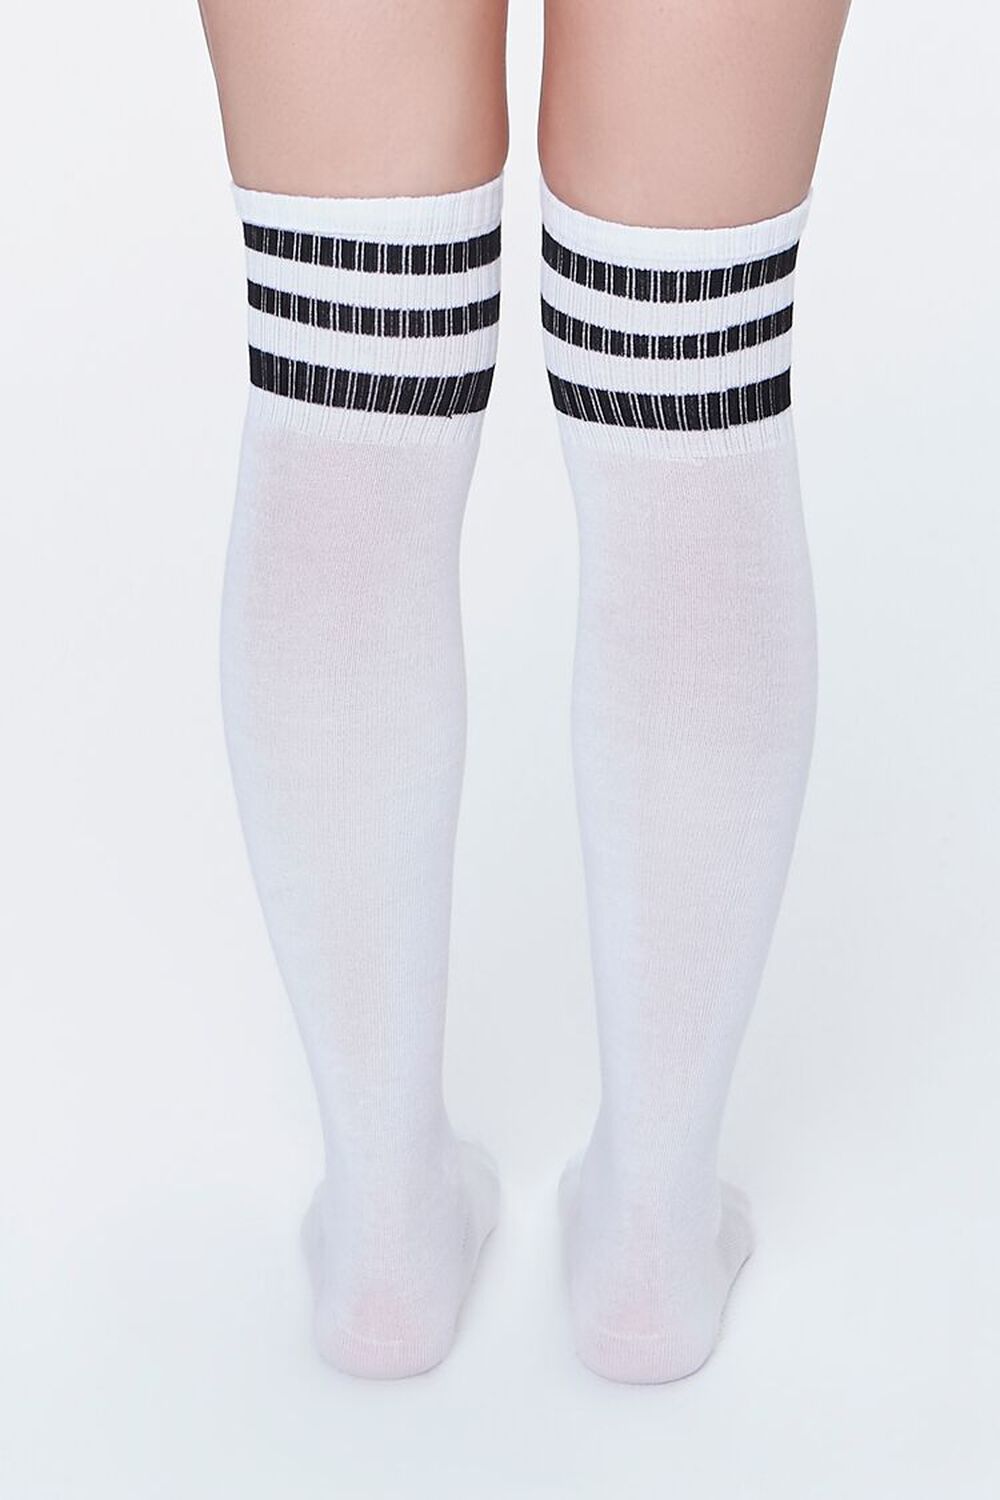 WHITE/BLACK Striped Over-the-Knee Socks, image 3